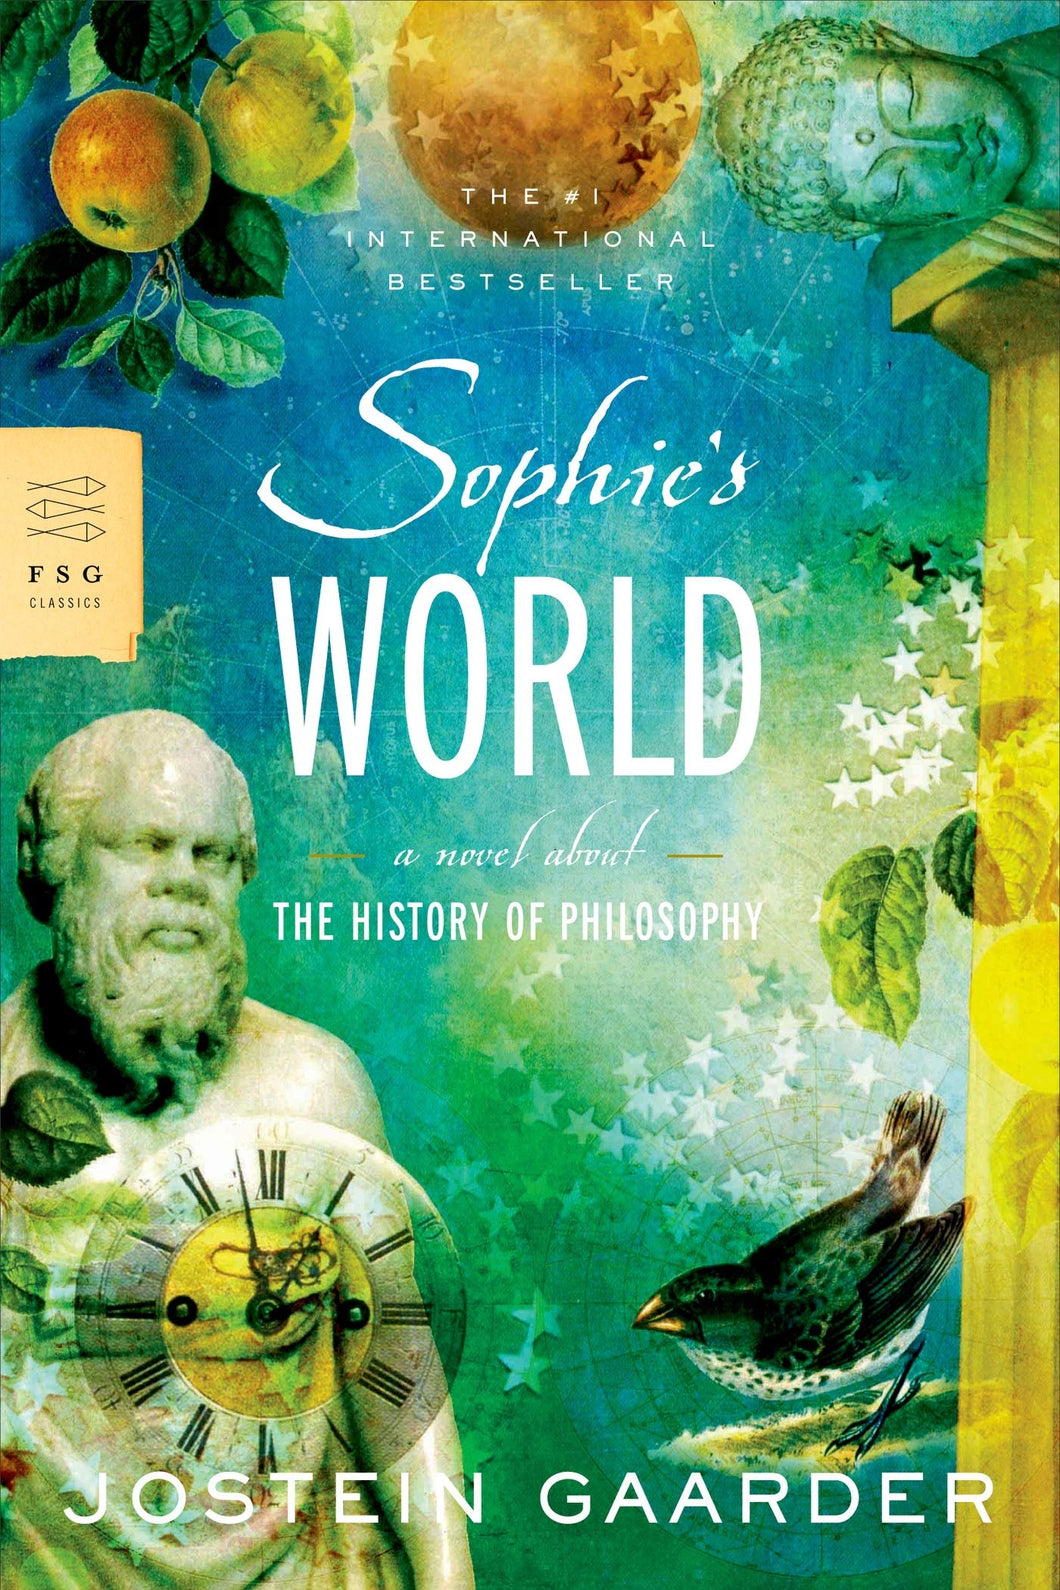 SOPHIE'S WORLD - Jostein Gaarder